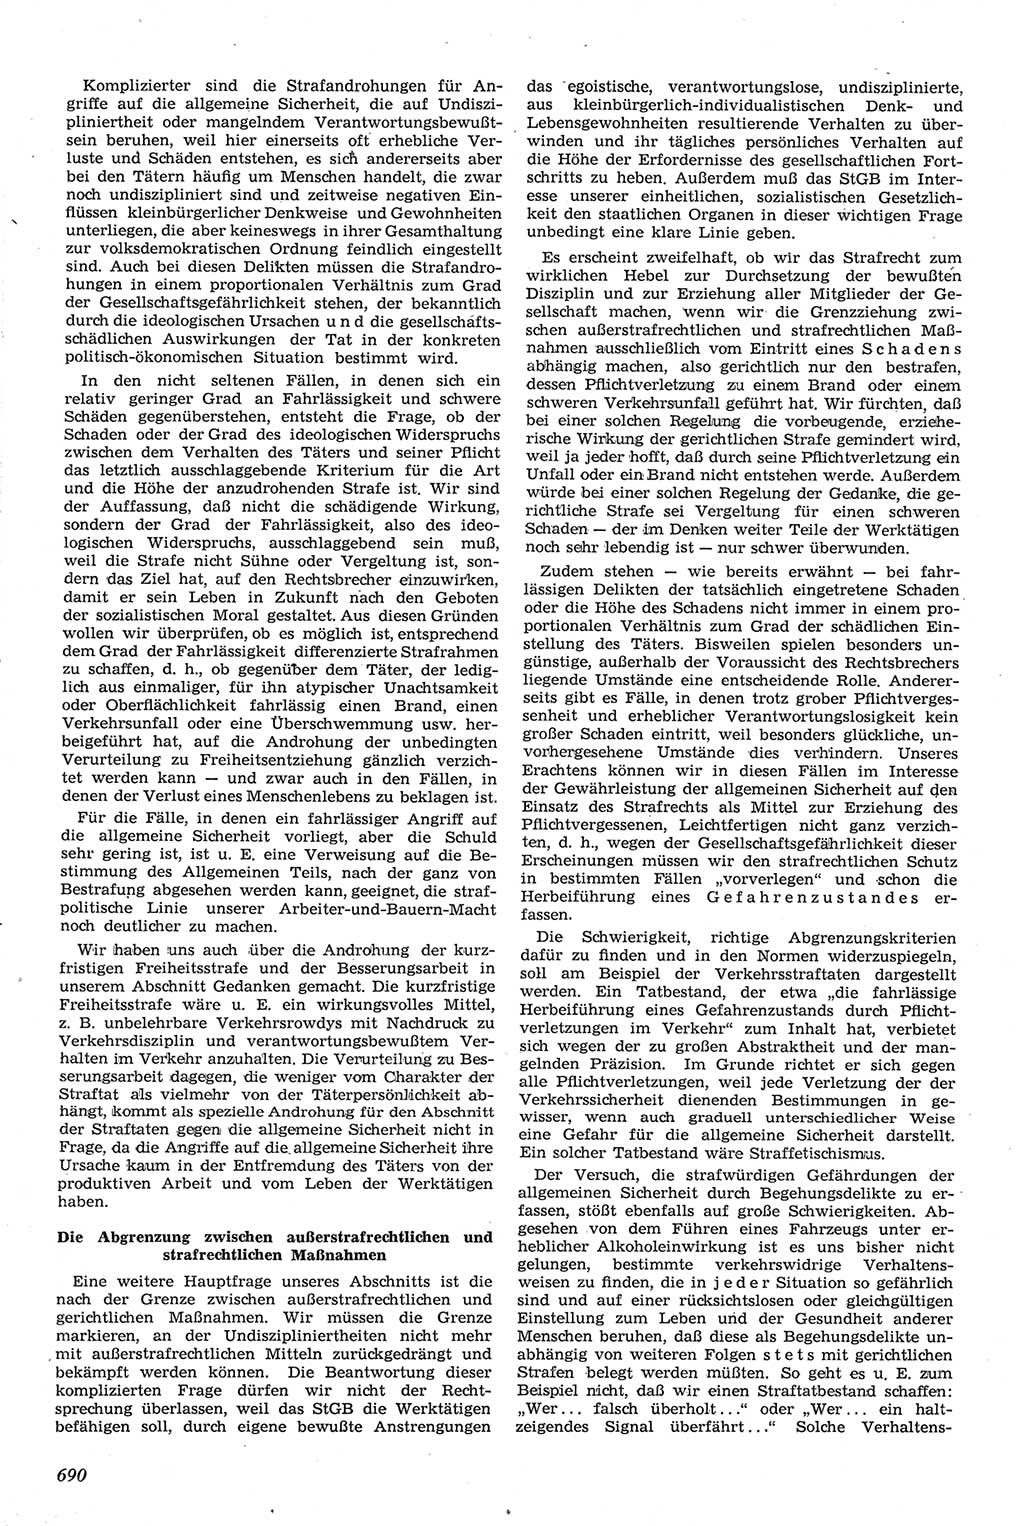 Neue Justiz (NJ), Zeitschrift für Recht und Rechtswissenschaft [Deutsche Demokratische Republik (DDR)], 14. Jahrgang 1960, Seite 690 (NJ DDR 1960, S. 690)